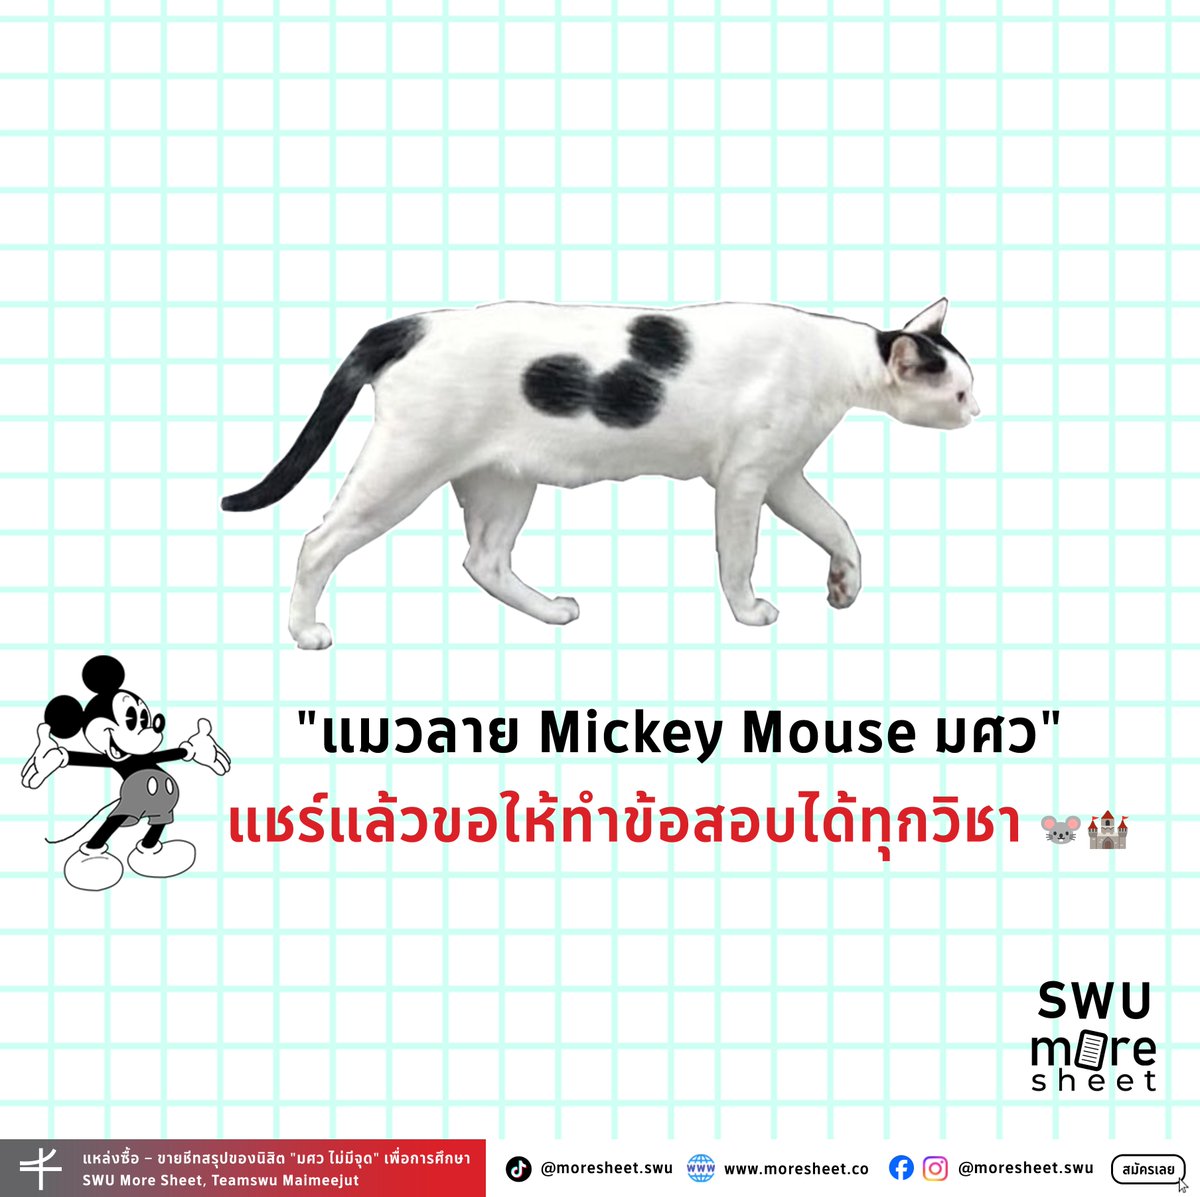 'แมวลาย Mickey Mouse มศว' 🤍🖤
แชร์แล้วขอให้ทำข้อสอบได้ทุกวิชา 🐭🏰

#ทีมมศว
#SWUmoresheet